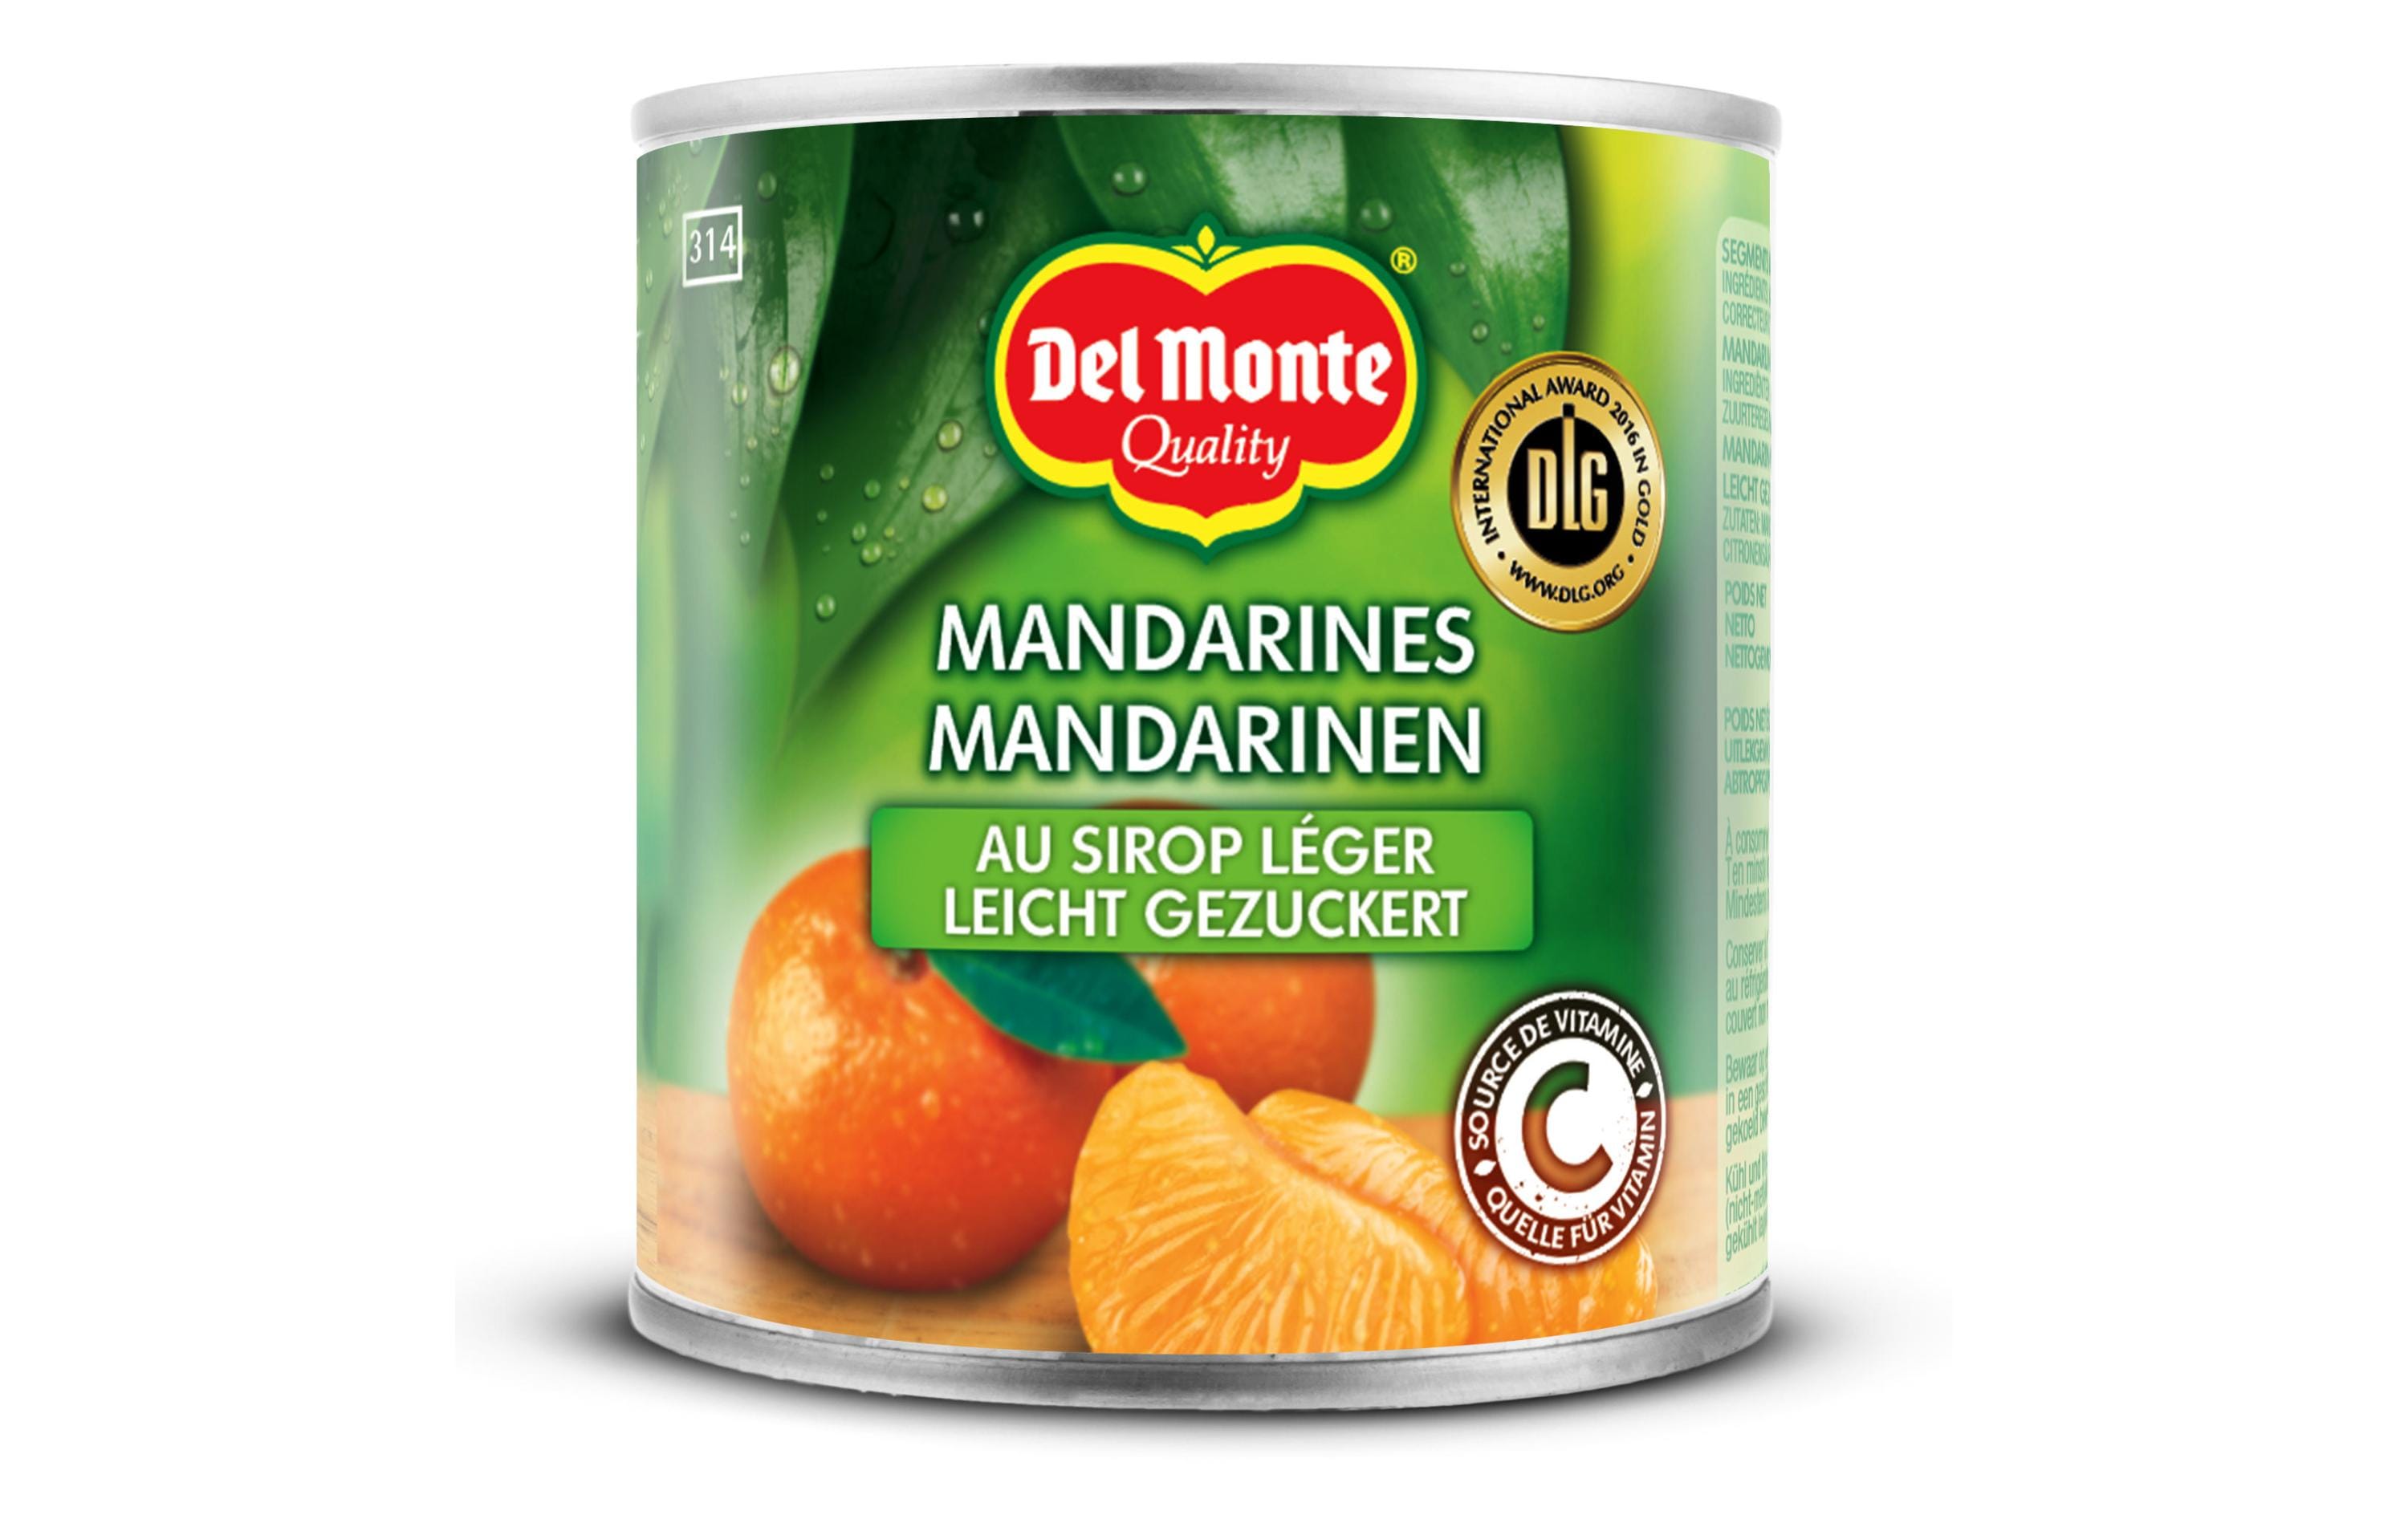 Del Monte Dose Mandarinen leicht gezuckert 175 g